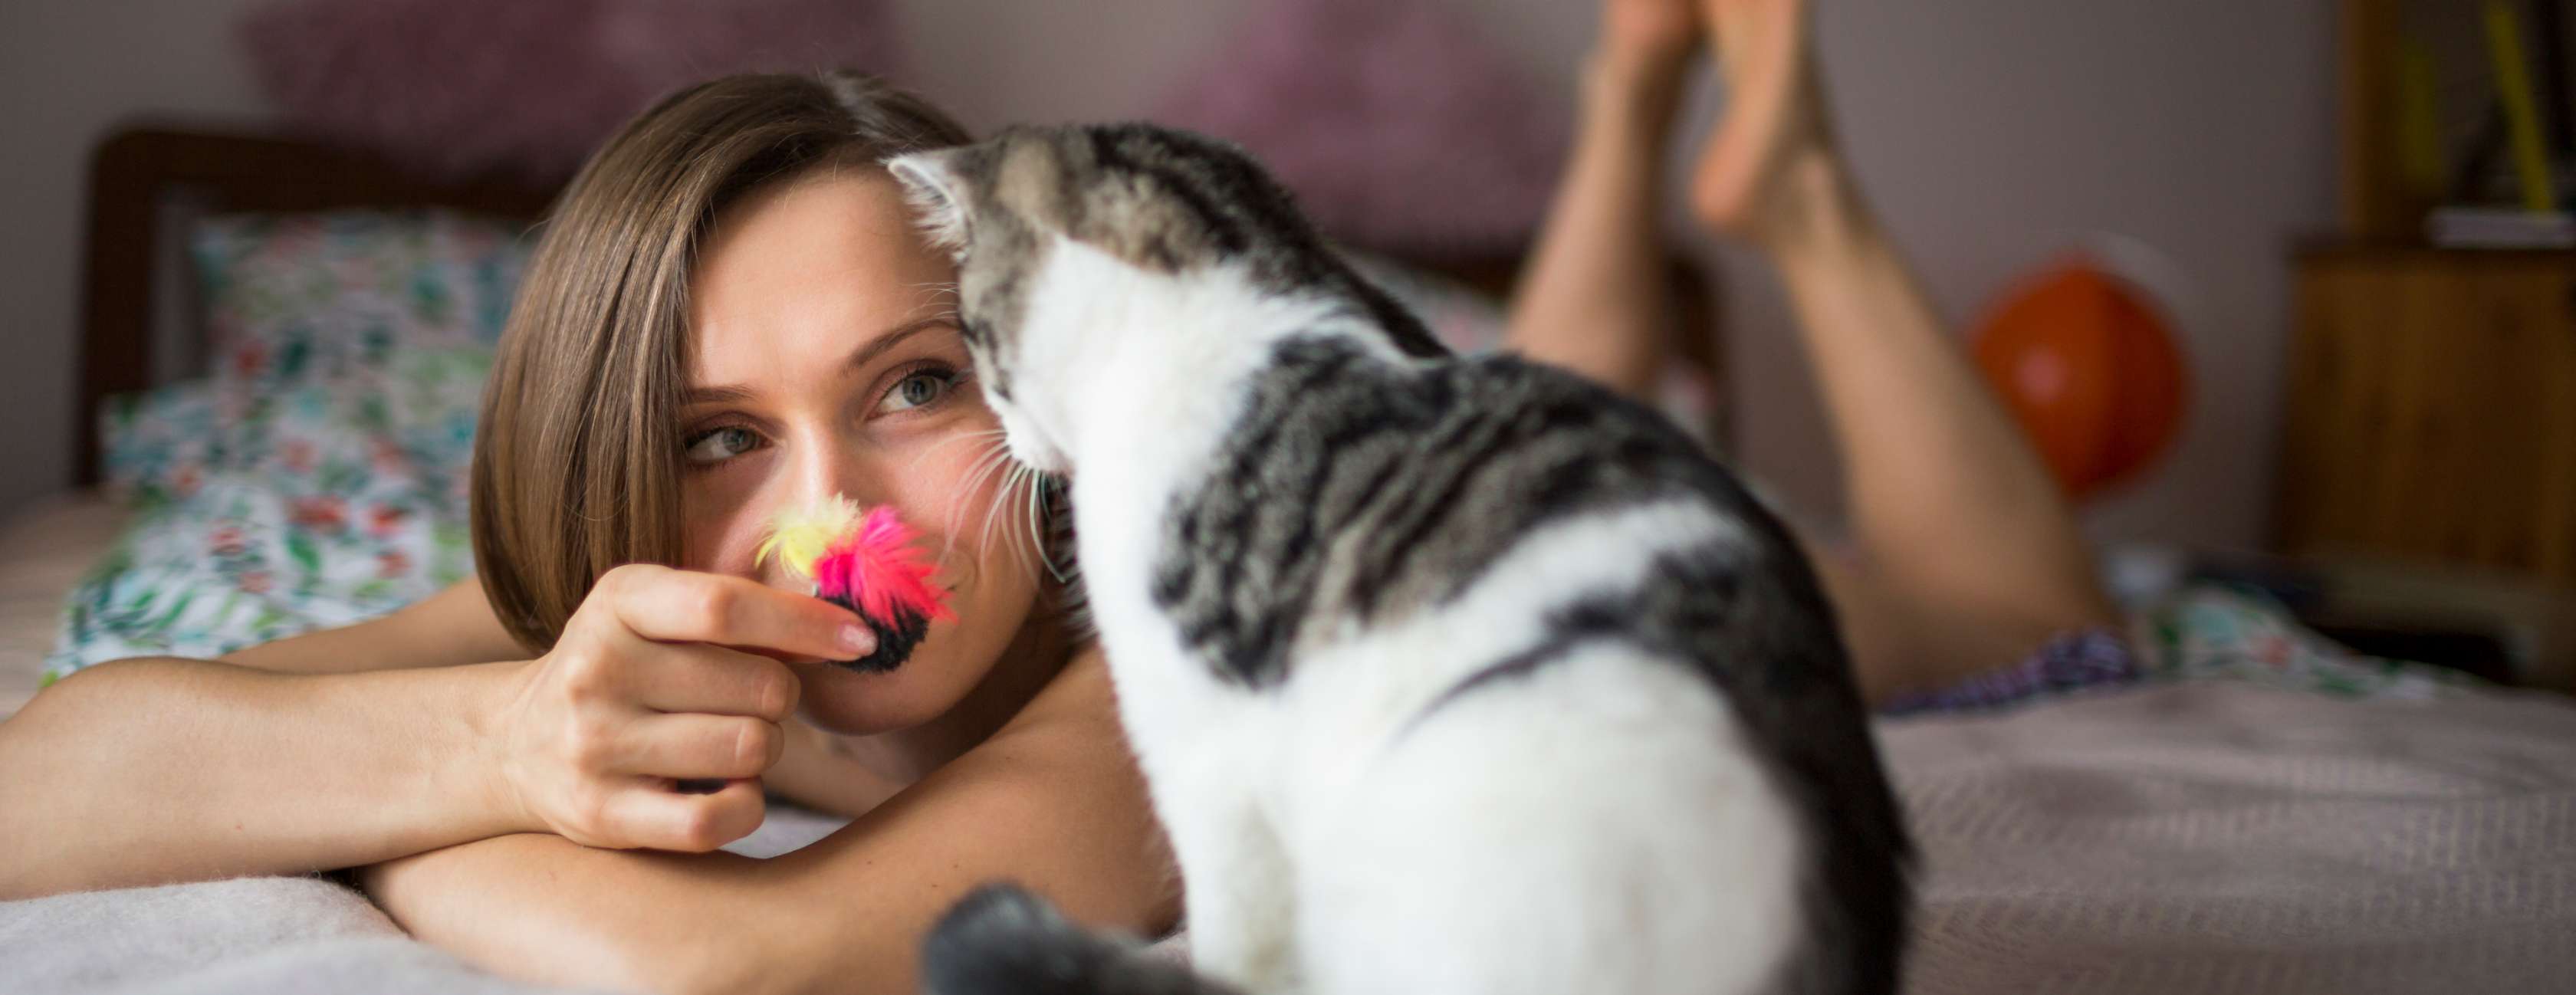 Junge Frau liegt auf Bett und spielt mit Katze